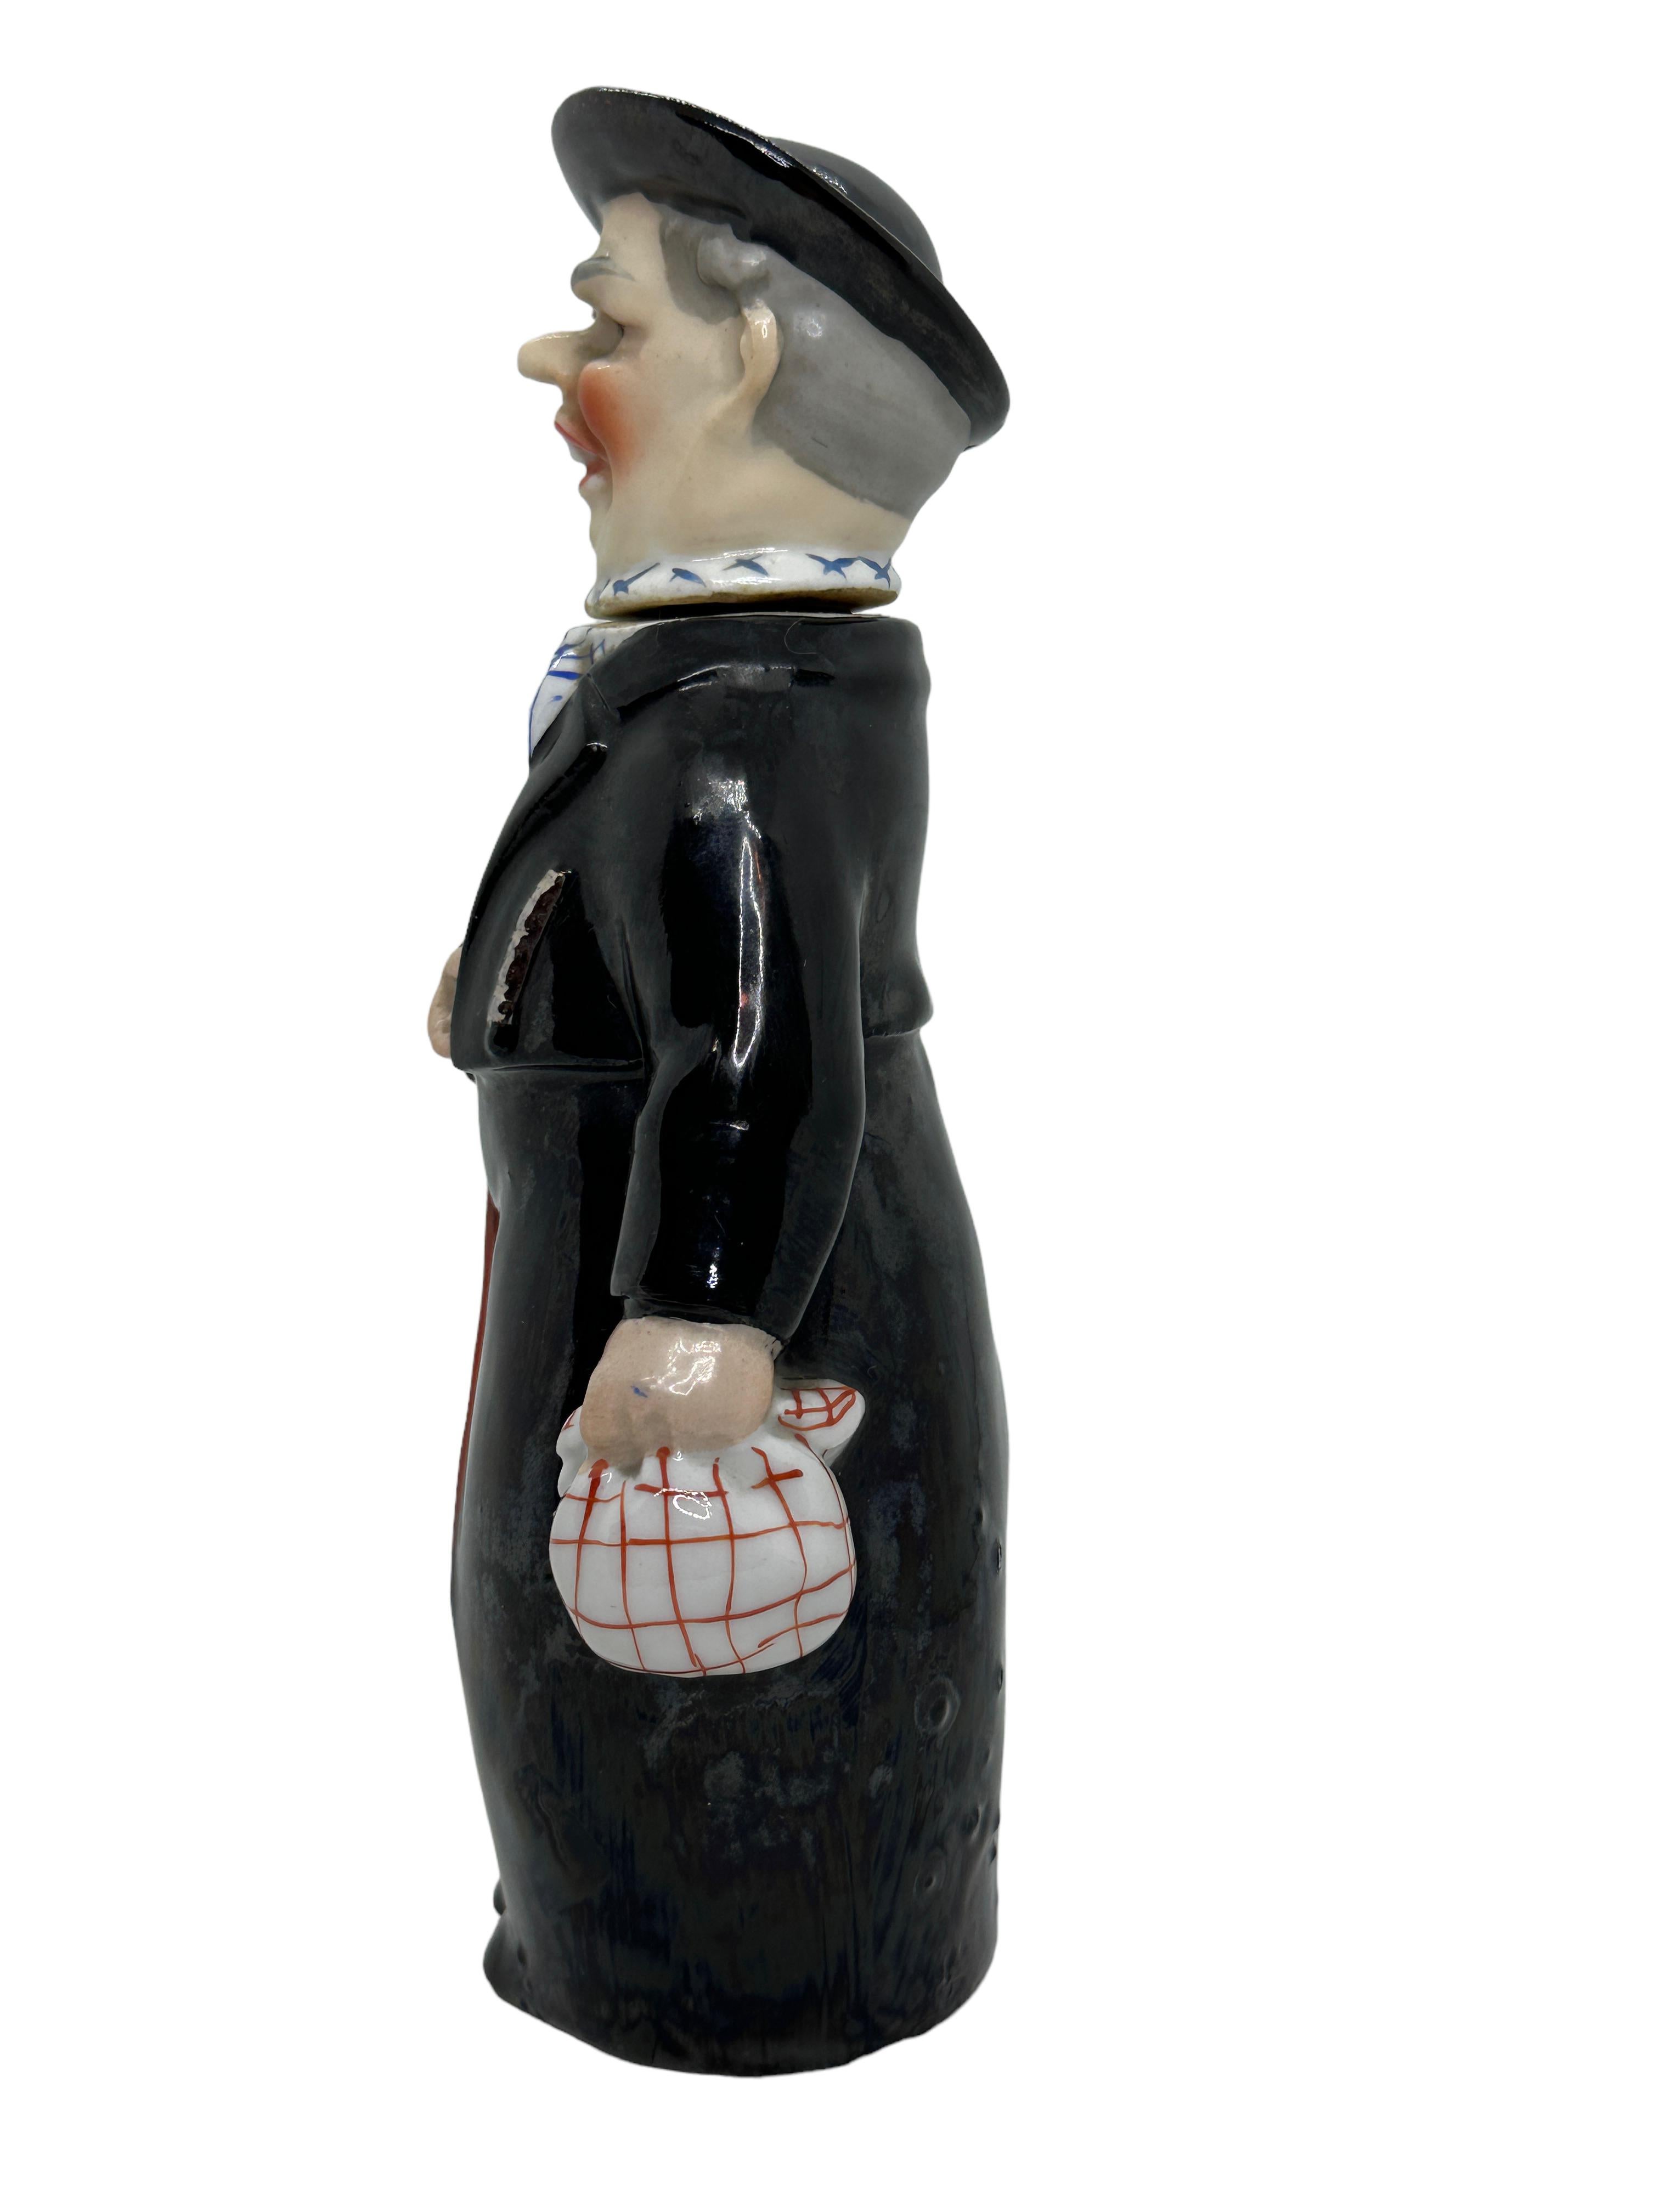 Eine wunderschöne Charakterflasche - traditioneller Schwarzwälder Priester. Diese Charakterflasche wurde in Deutschland um 1910 oder älter hergestellt, zugeschrieben von E. Bohne, Thüringen Deutschland. Absolut wunderschönes Stück, handbemalt und